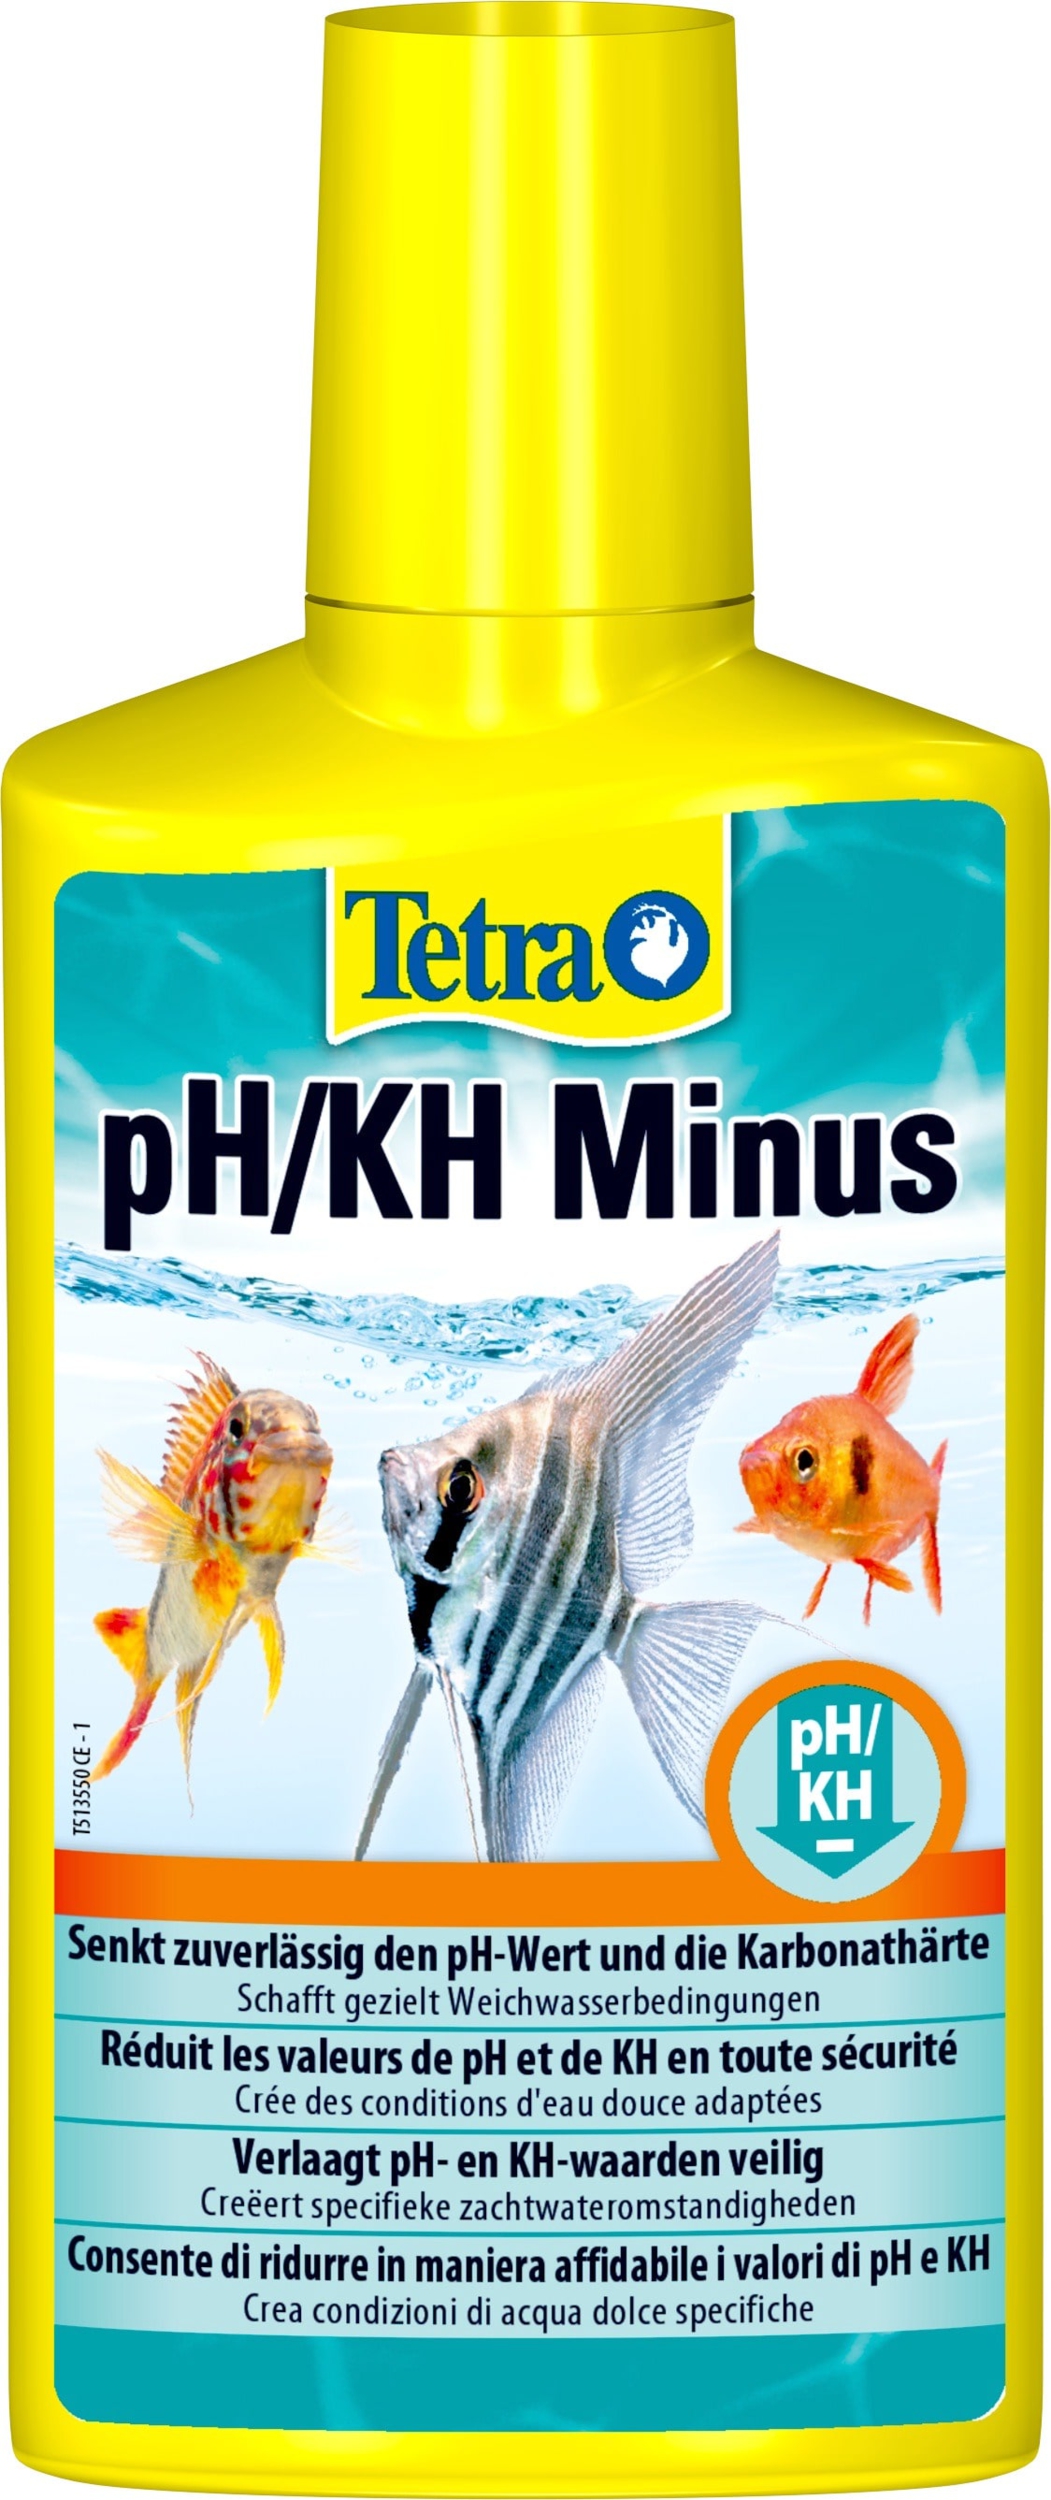 TETRA pH/KH Minus réduit en toute sécurité le pH et le KH dans votre aquarium